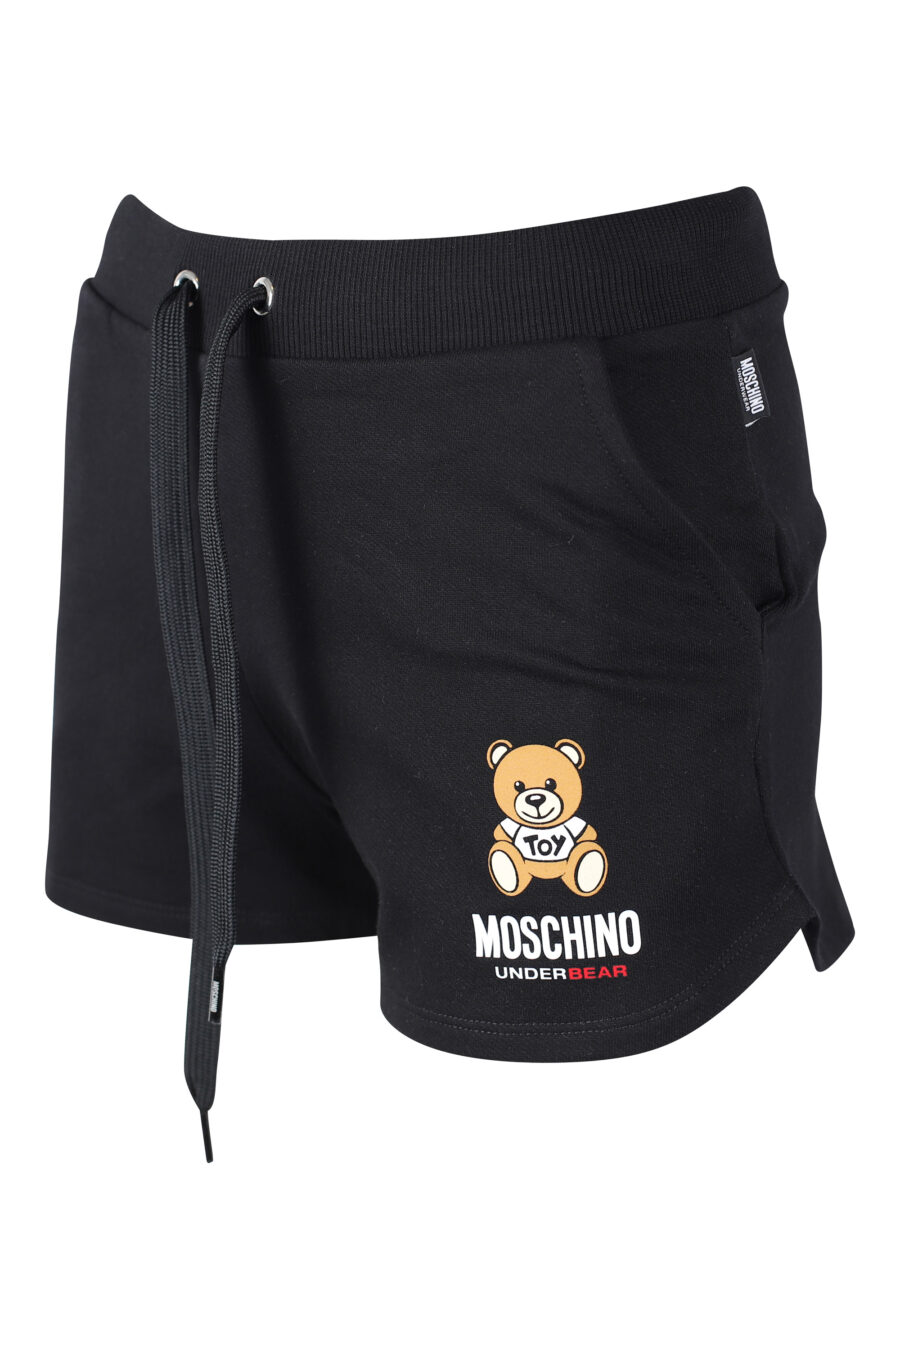 Pantalón de chándal corto negro con logo oso underbear - IMG 2286